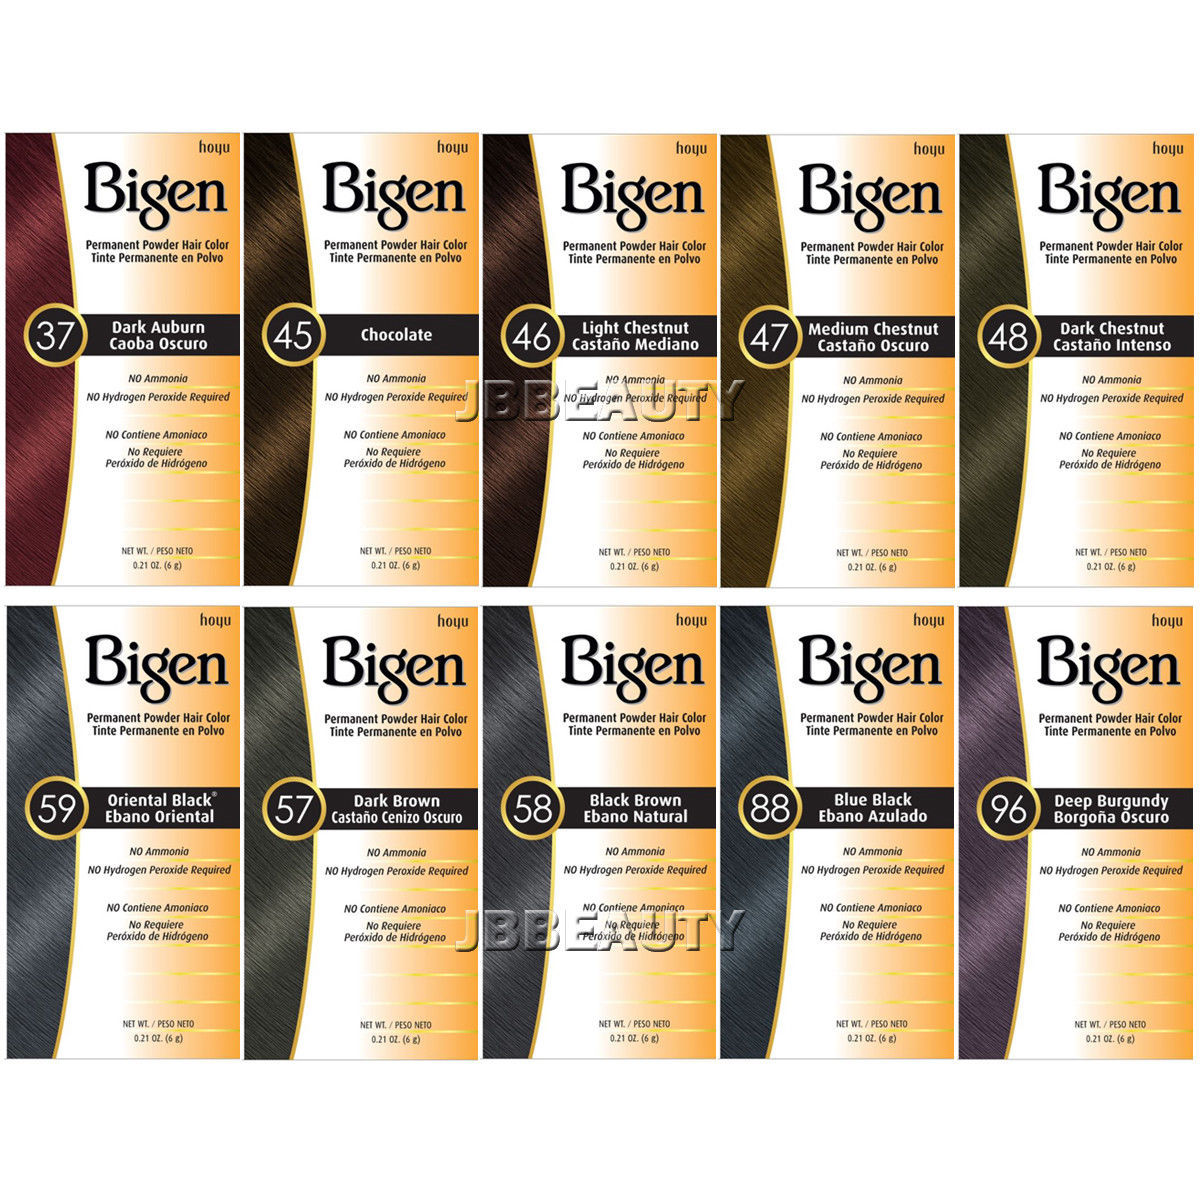 Bigen Permanent Powder Hair Color 100 Gray Coverage No Ammonia 0.21oz